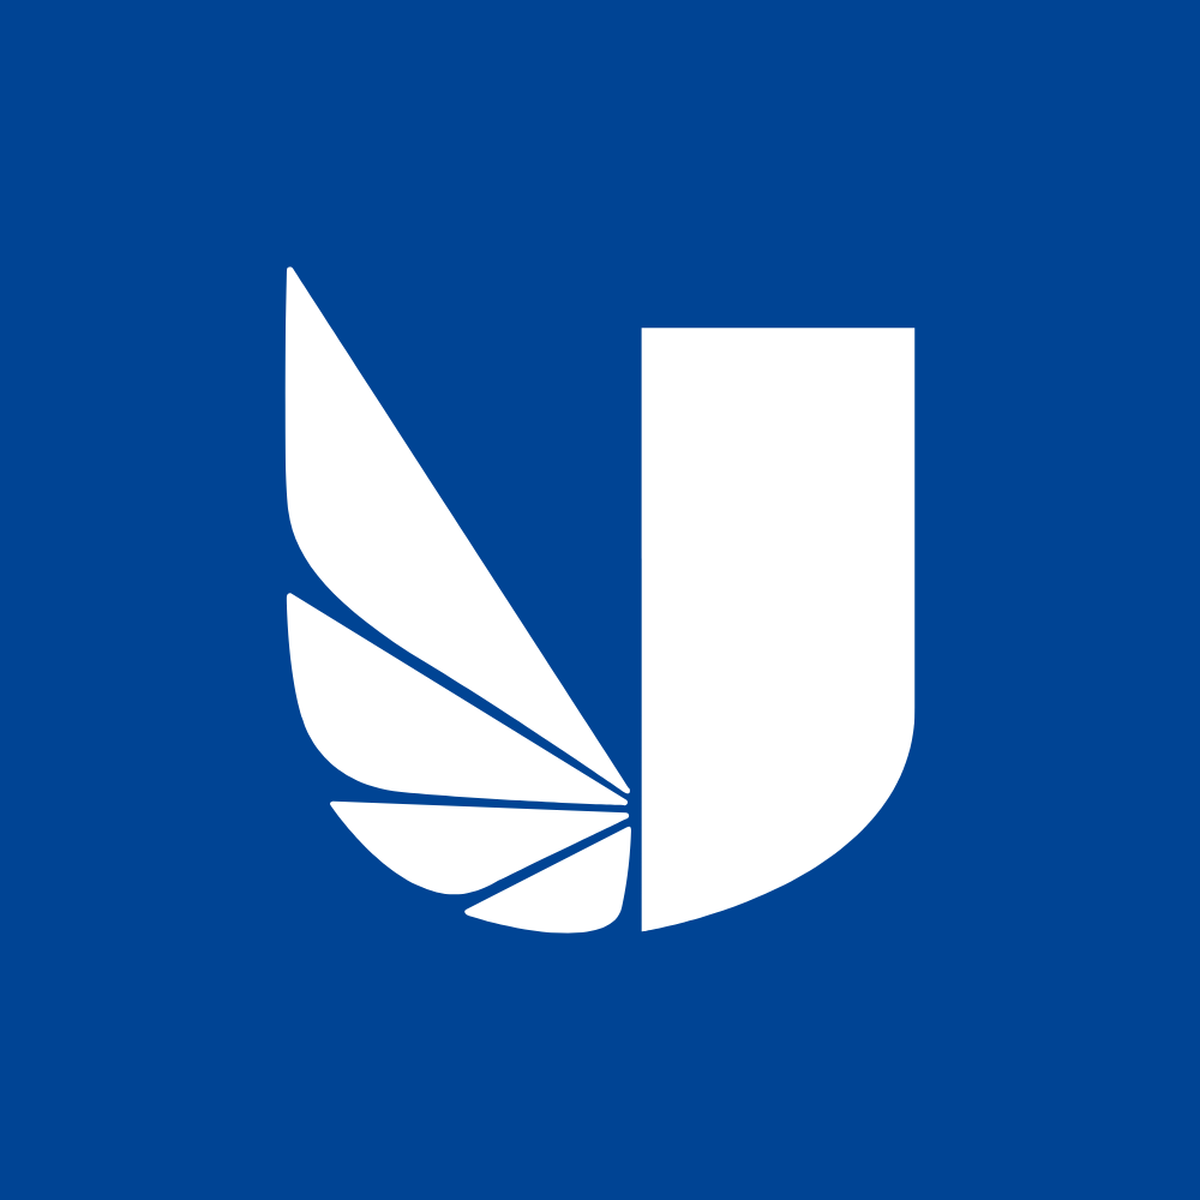 Uwl logo